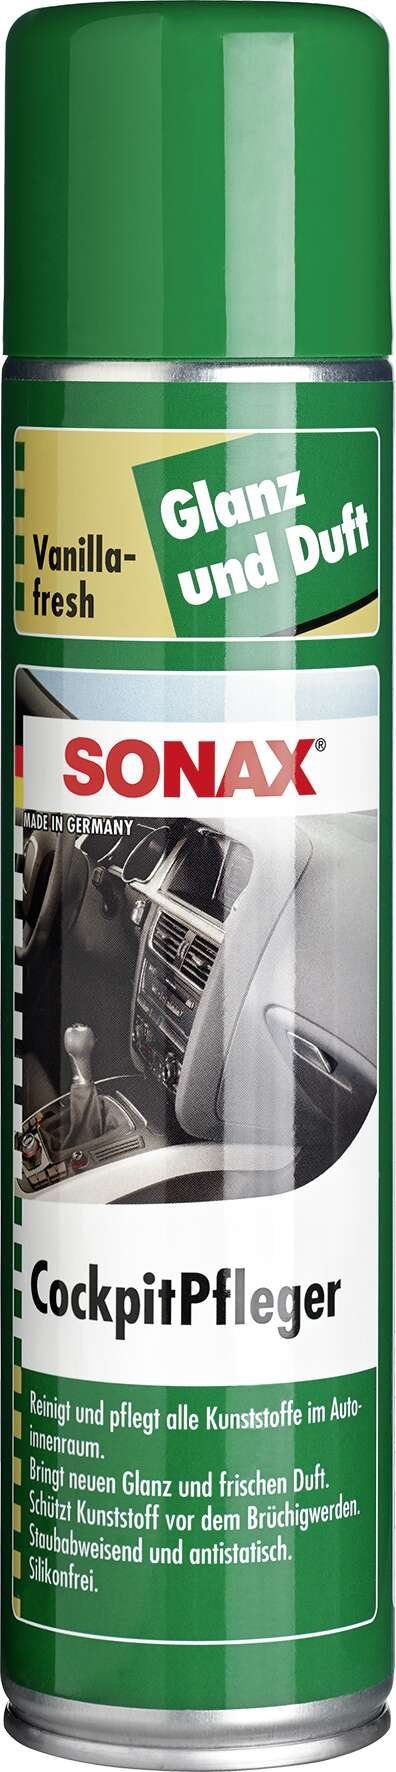 SONAX Cockpitpfleger 400 ml Vanilla-fresh Sprühdose, Autopflege, Komfort  & Zubehör